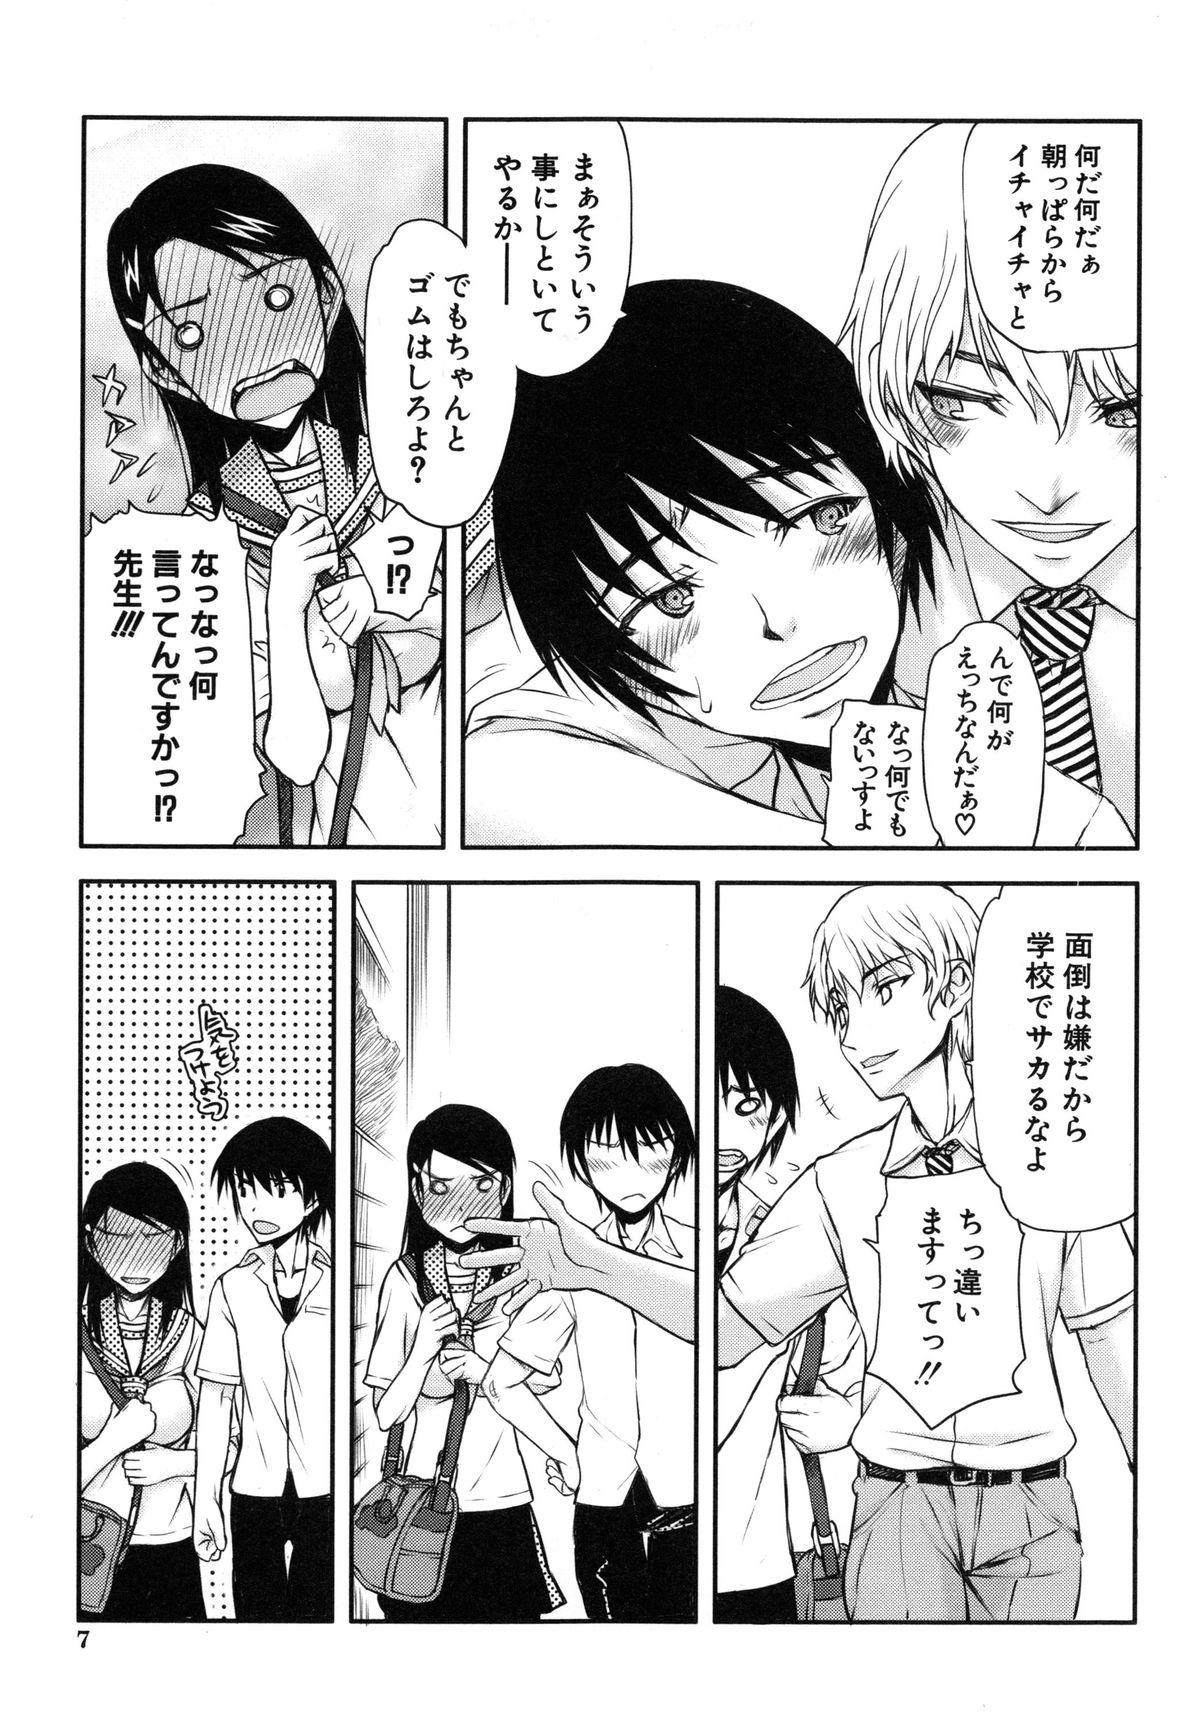 Transgender Watashi wa Hoka no Otoko to, SEX Shite, SEX Shite, SEX o Shita. Flashing - Page 10